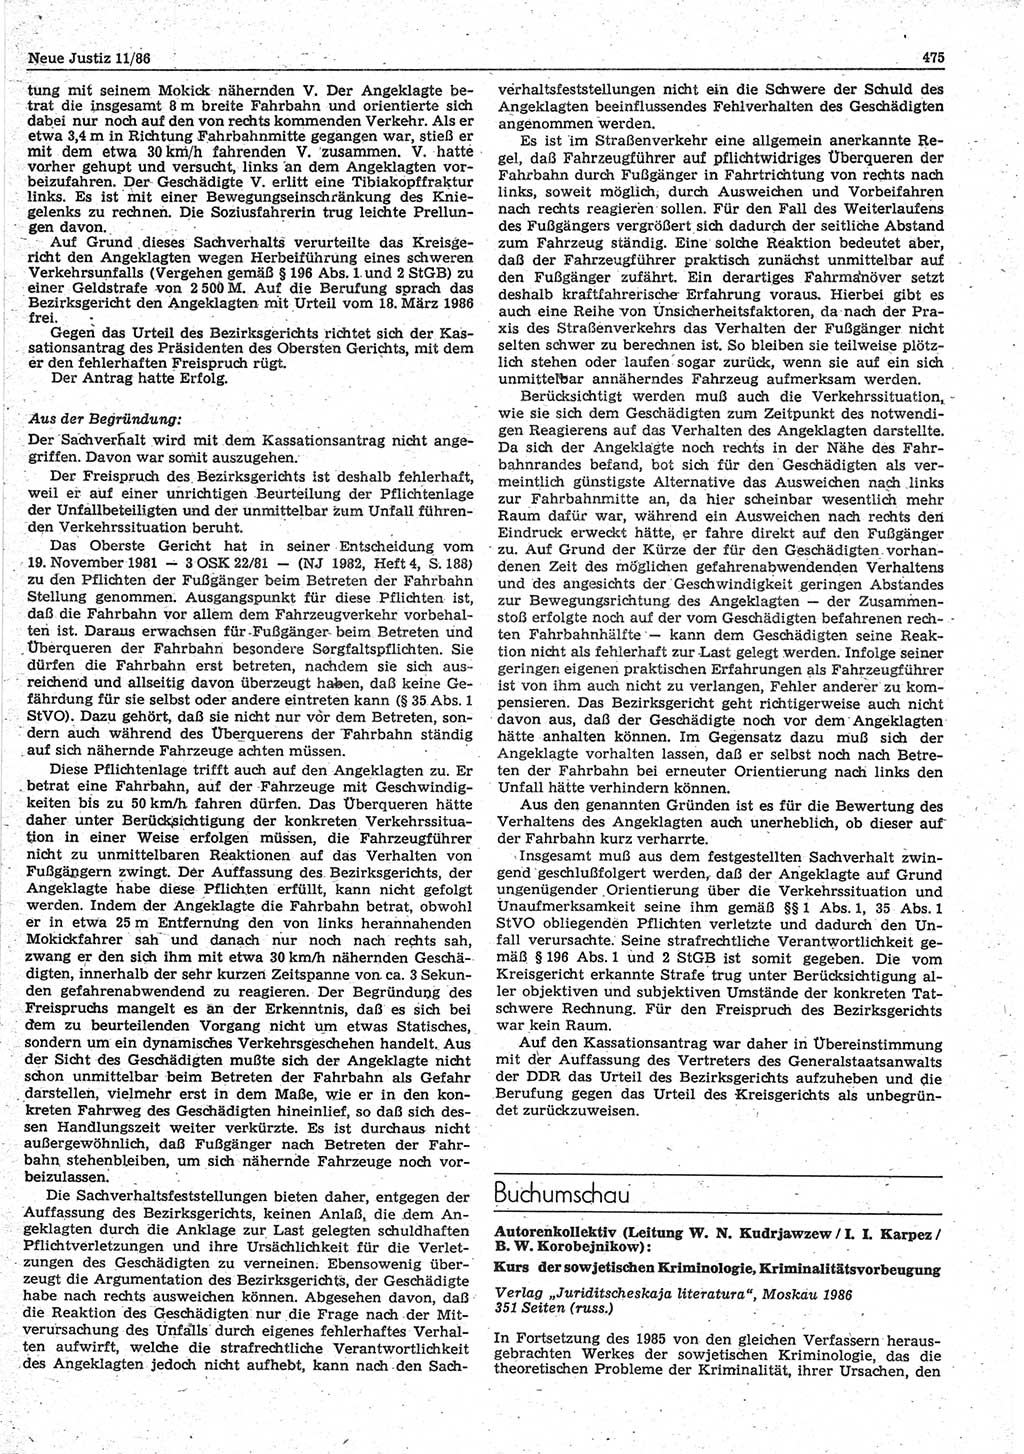 Neue Justiz (NJ), Zeitschrift für sozialistisches Recht und Gesetzlichkeit [Deutsche Demokratische Republik (DDR)], 40. Jahrgang 1986, Seite 475 (NJ DDR 1986, S. 475)